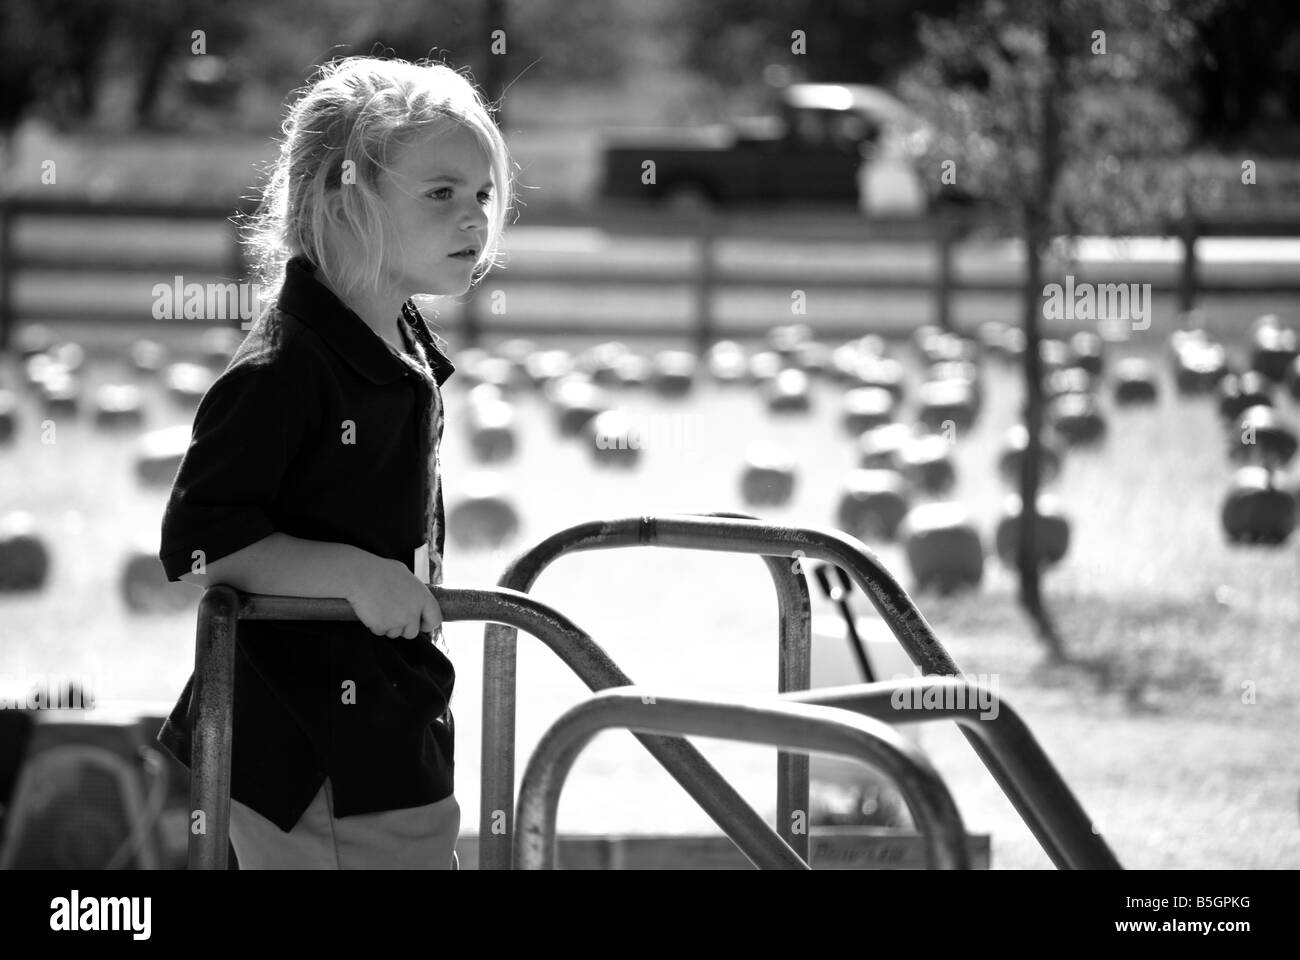 schwarz / weiß Bild eines Mädchens auf einem Karussell auf einem Spielplatz Stockfoto